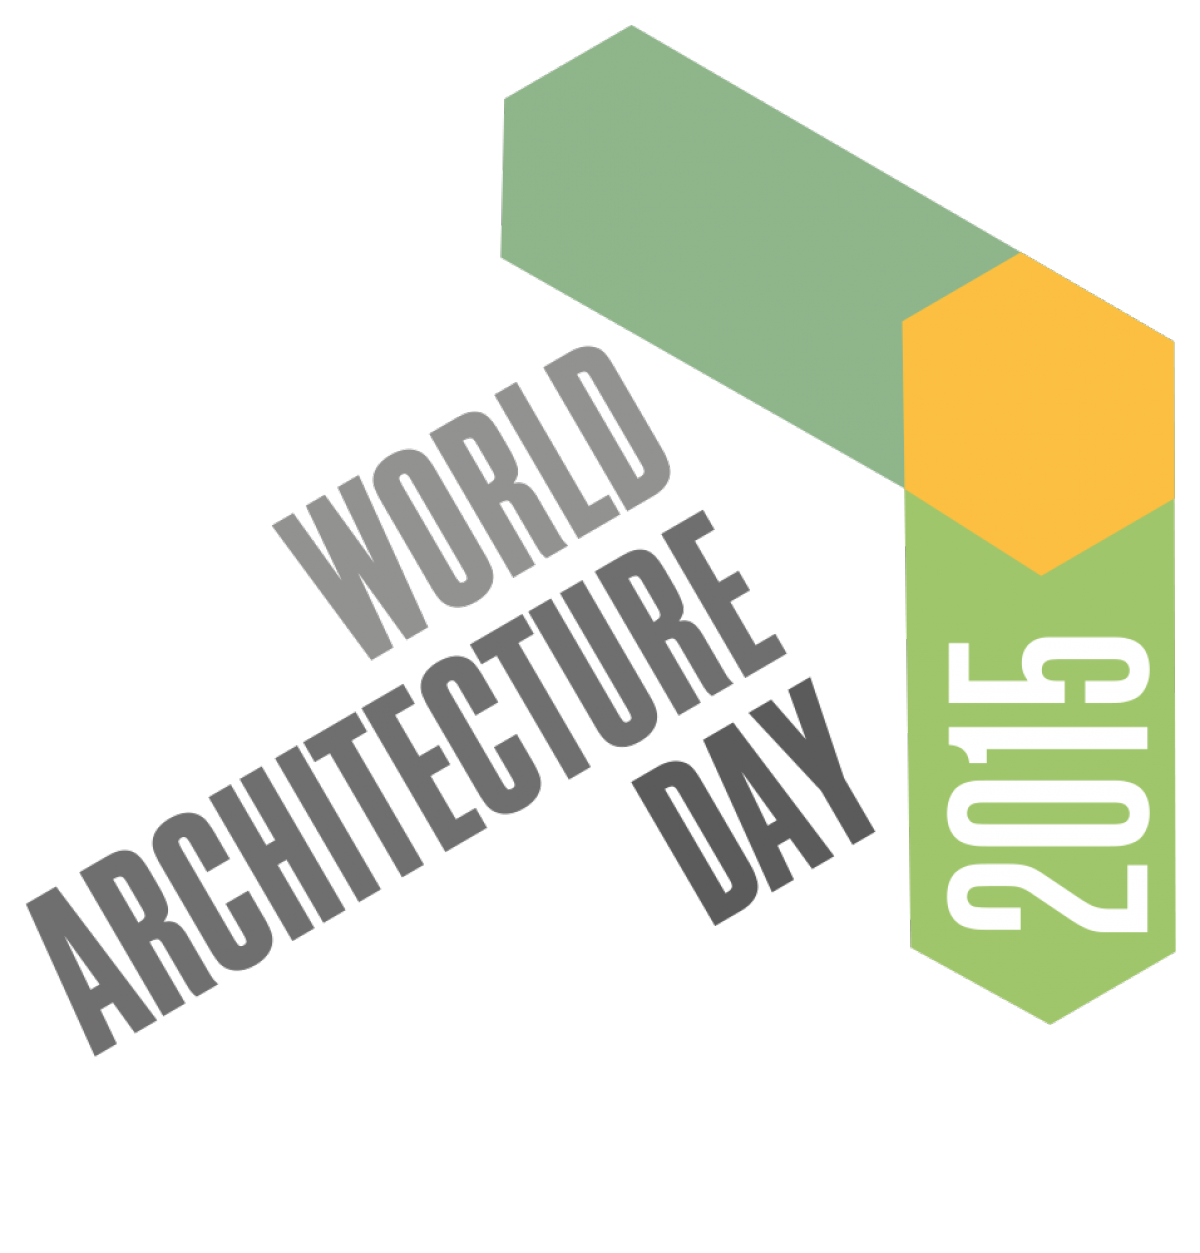 Δήλωση του Προέδρου του Συλλόγου Αρχιτεκτόνων Ισπανίας για την Παγκόσμια Ημέρα Αρχιτεκτονικής 2015